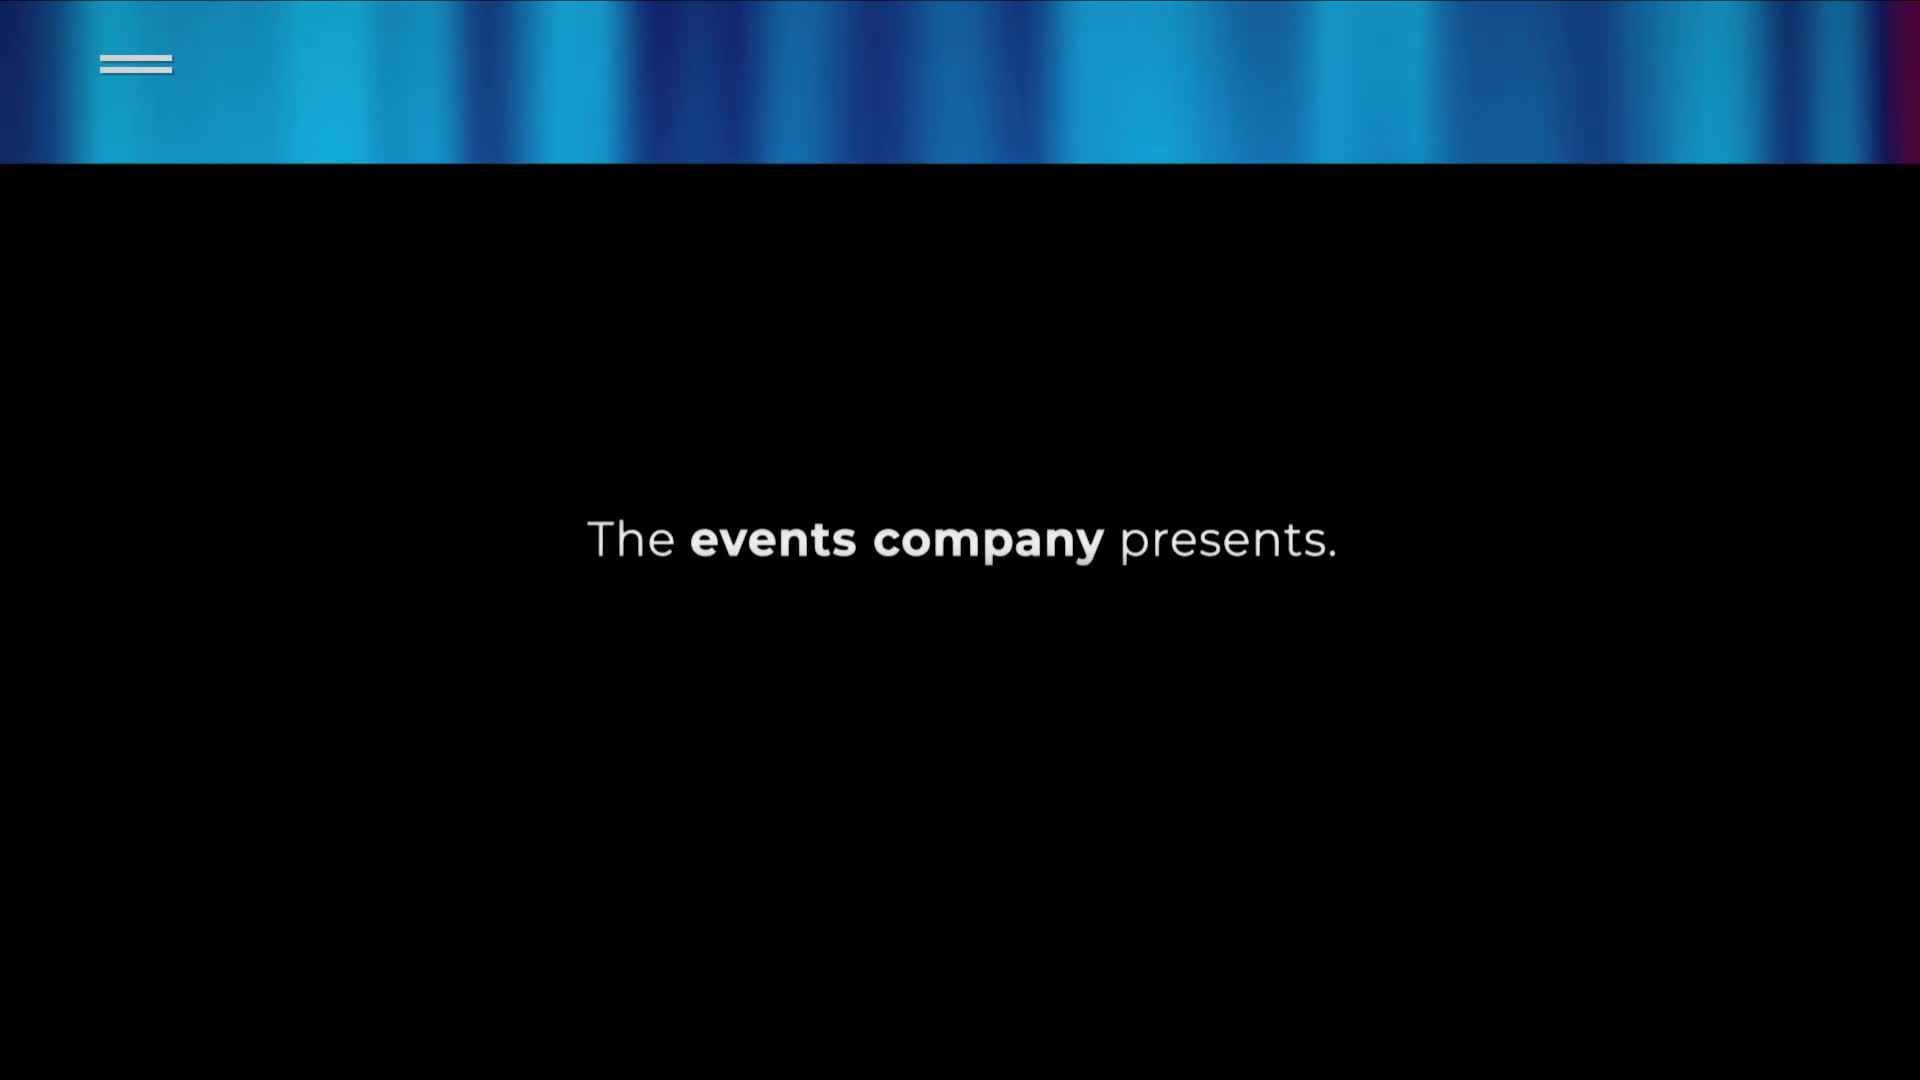 Online Event Promo | Premiere Pro Videohive 36046521 Premiere Pro Image 1